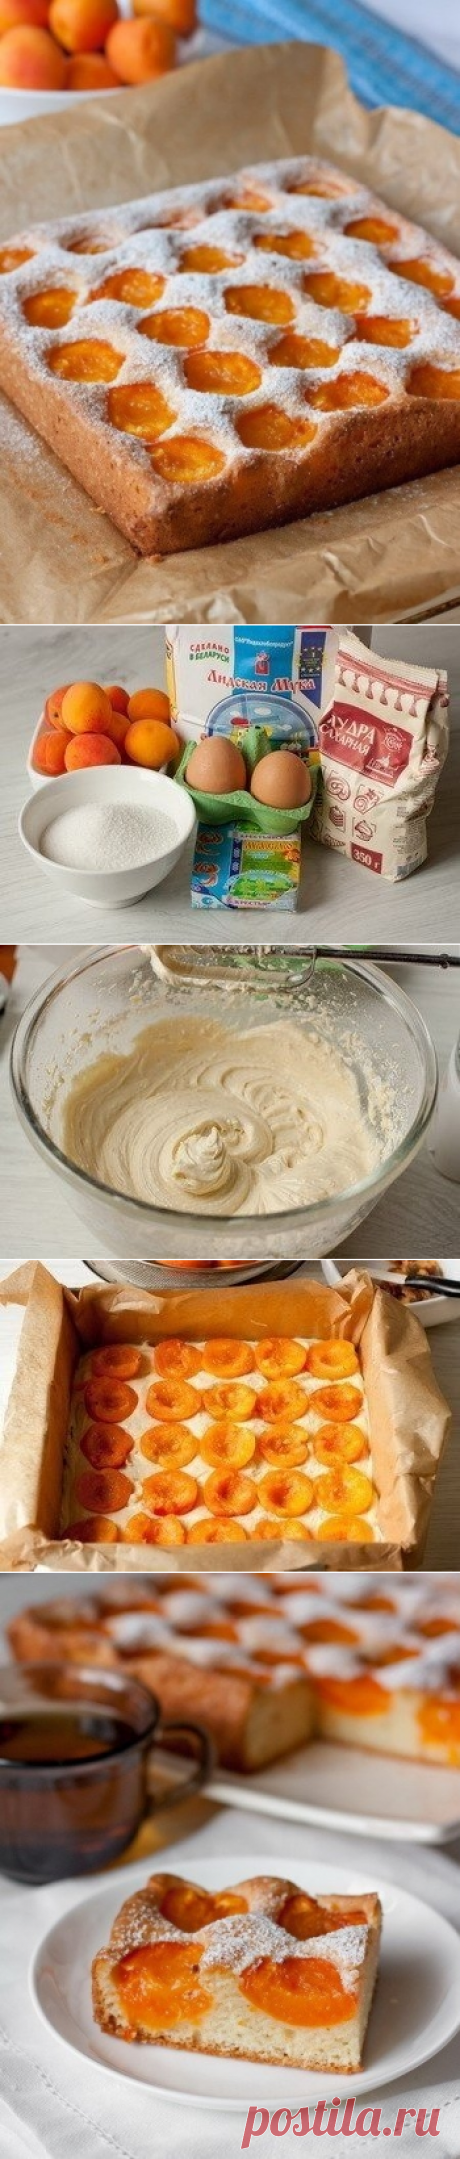 Как приготовить бисквитный абрикосовый пирог. - рецепт, ингридиенты и фотографии